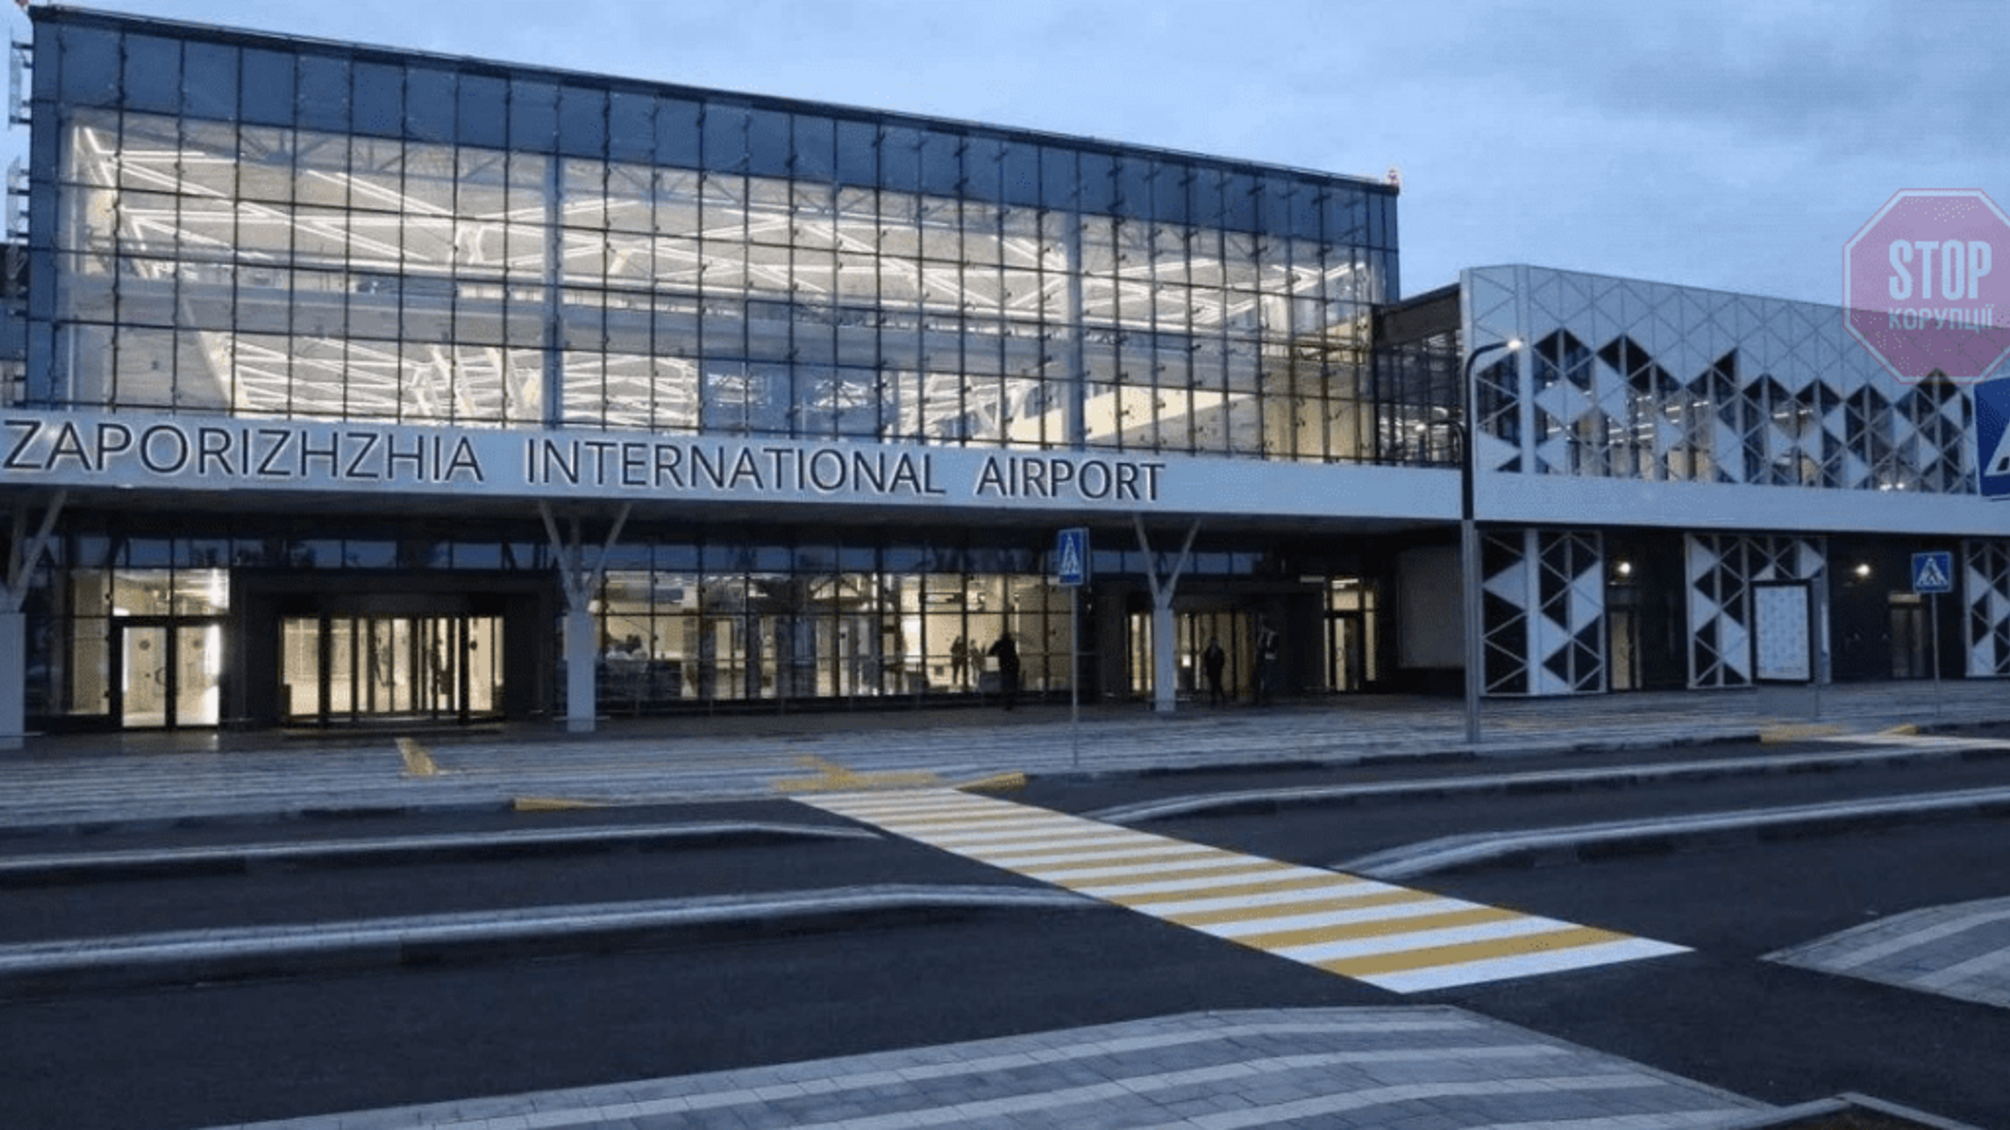 Керівництво аеропорту в Запоріжжі підозрюють у привласненні 0,5 млн грн